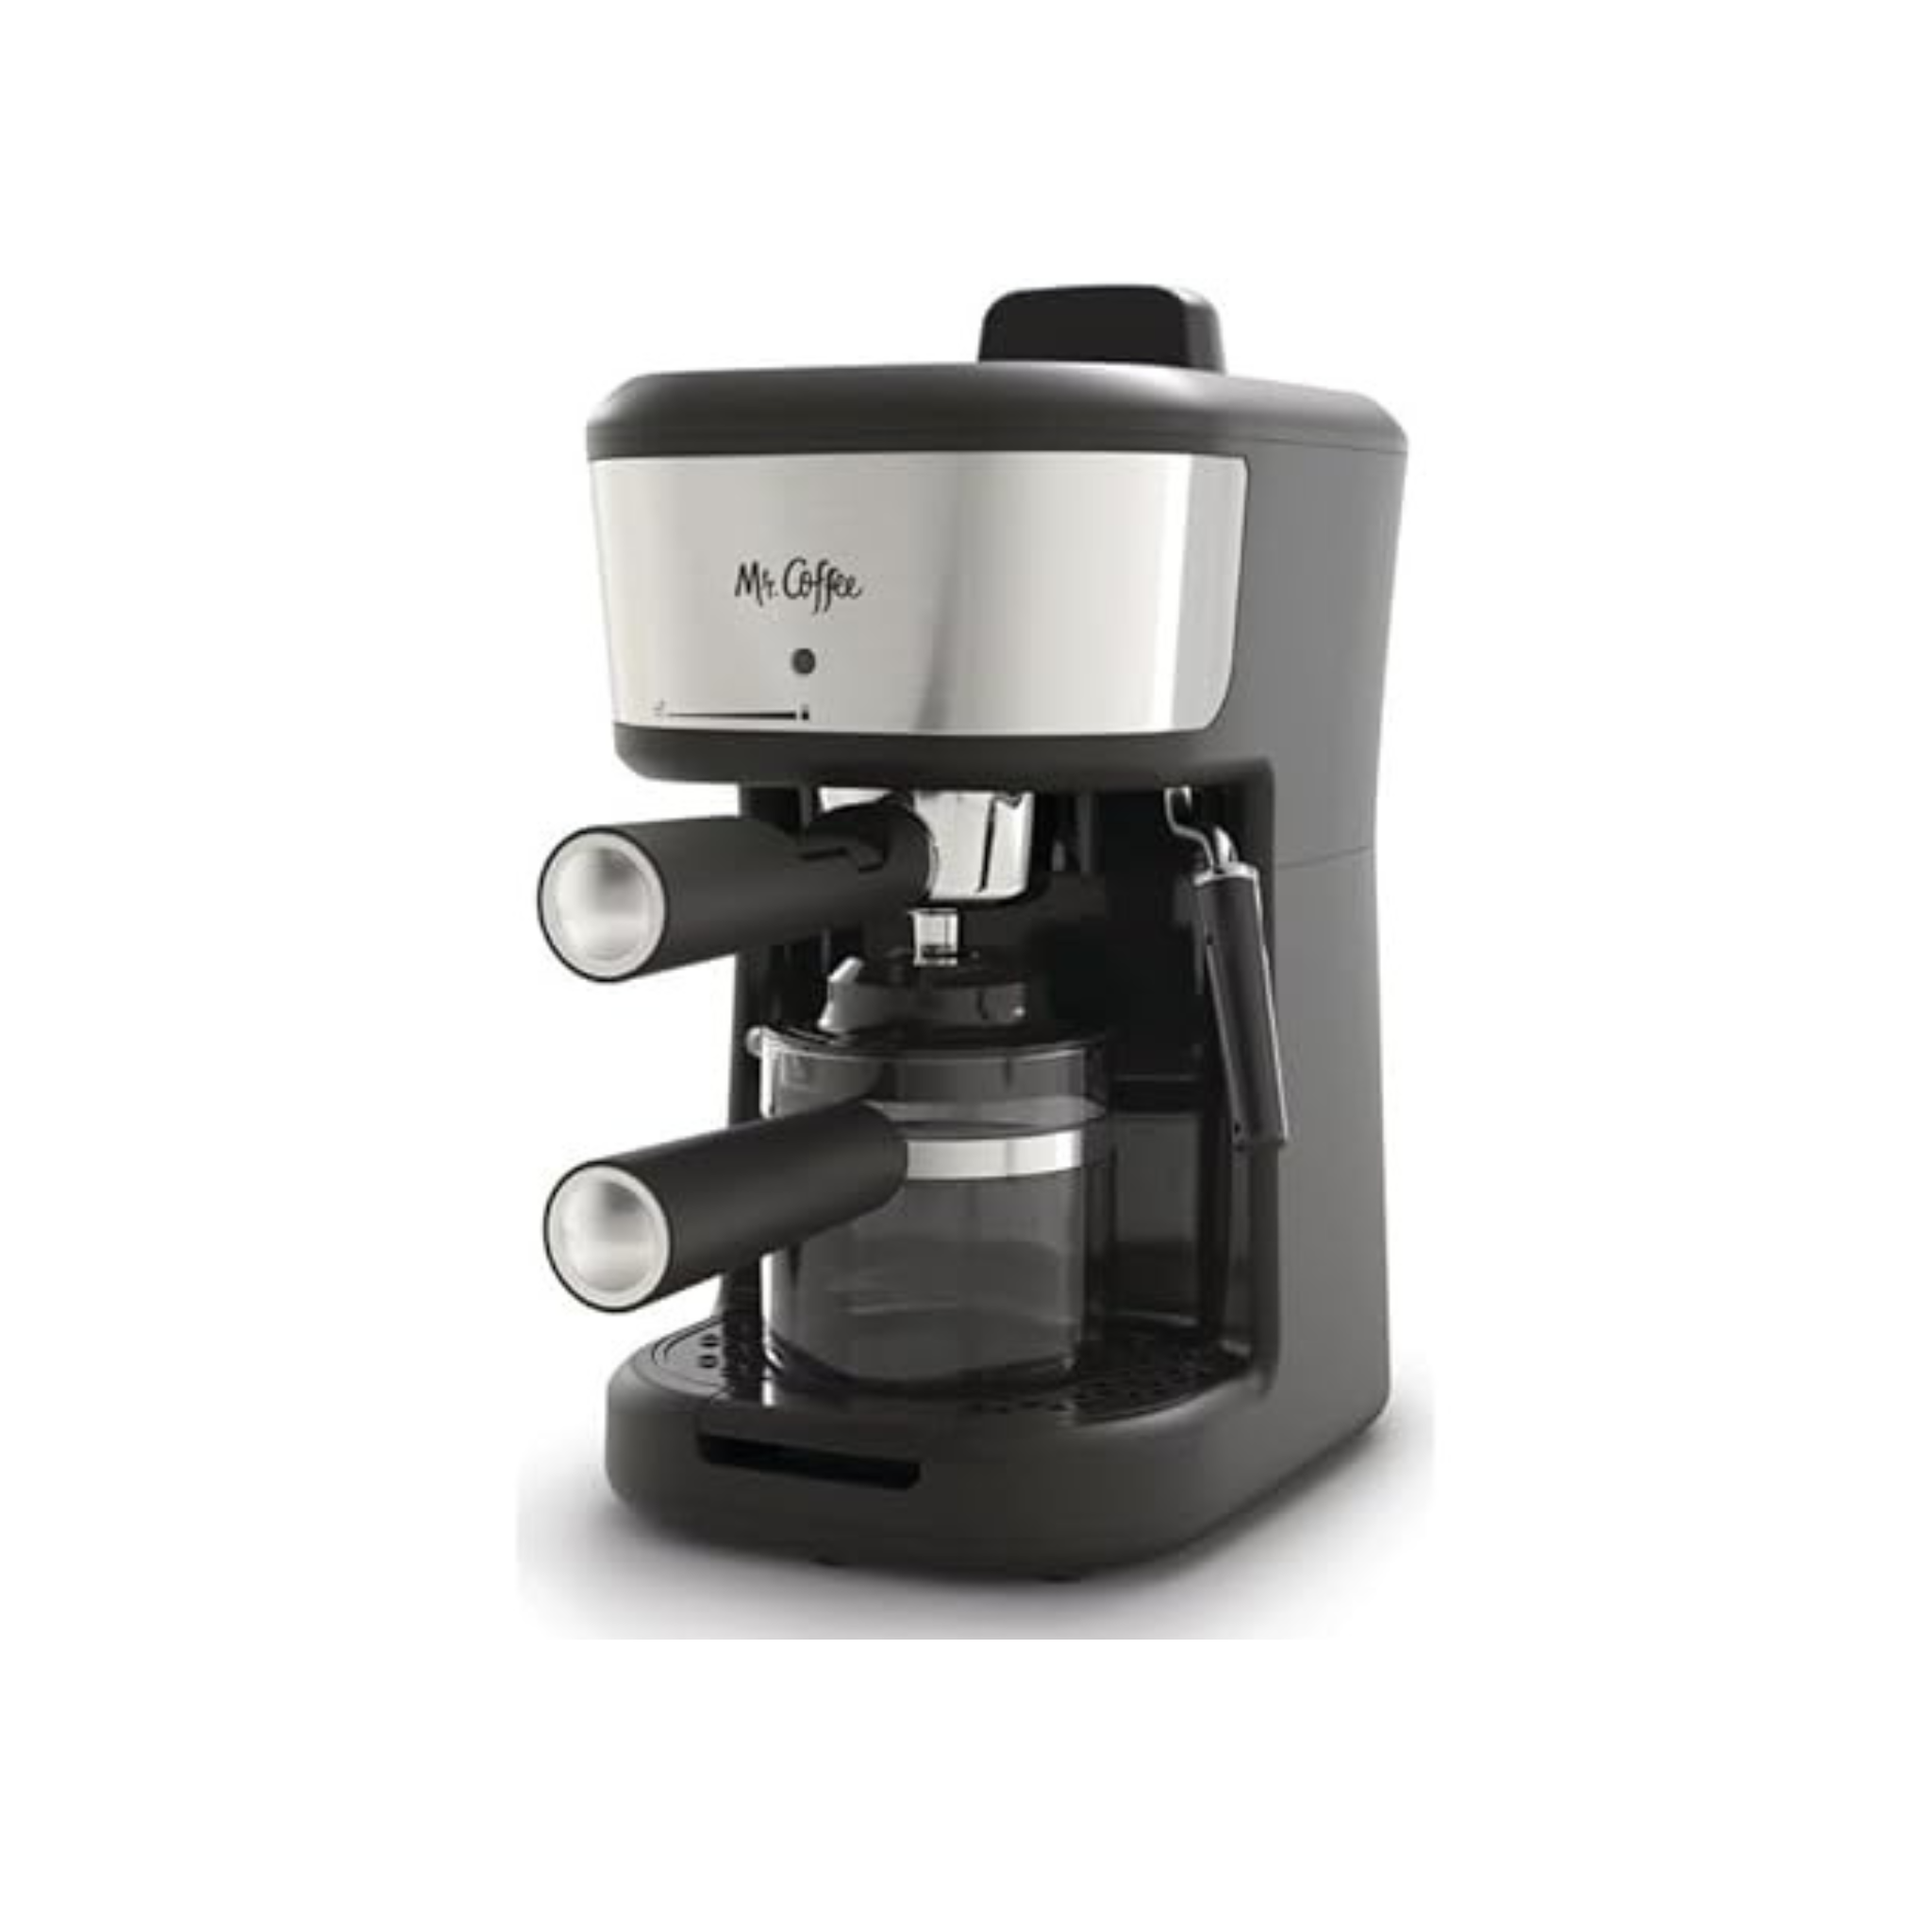 Mr. Coffee 4-Shot Steam Espresso Cappuccino and Latte Maker